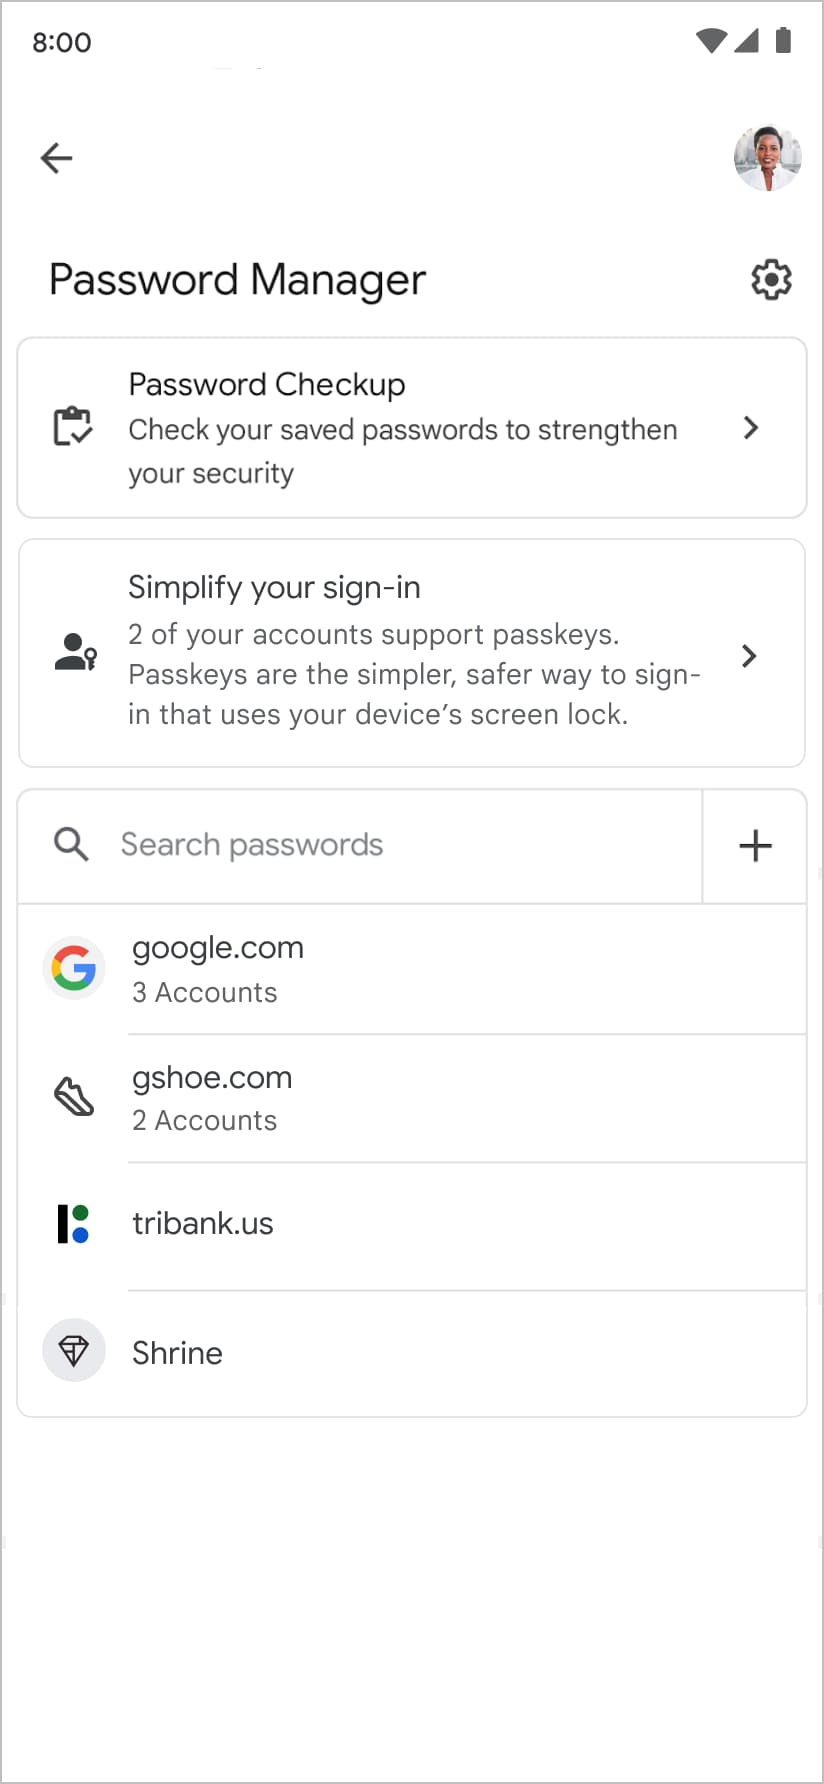 El Administrador de contraseñas de Google sugiere que el usuario cree una llave de acceso cuando revise su lista de contraseñas existentes.